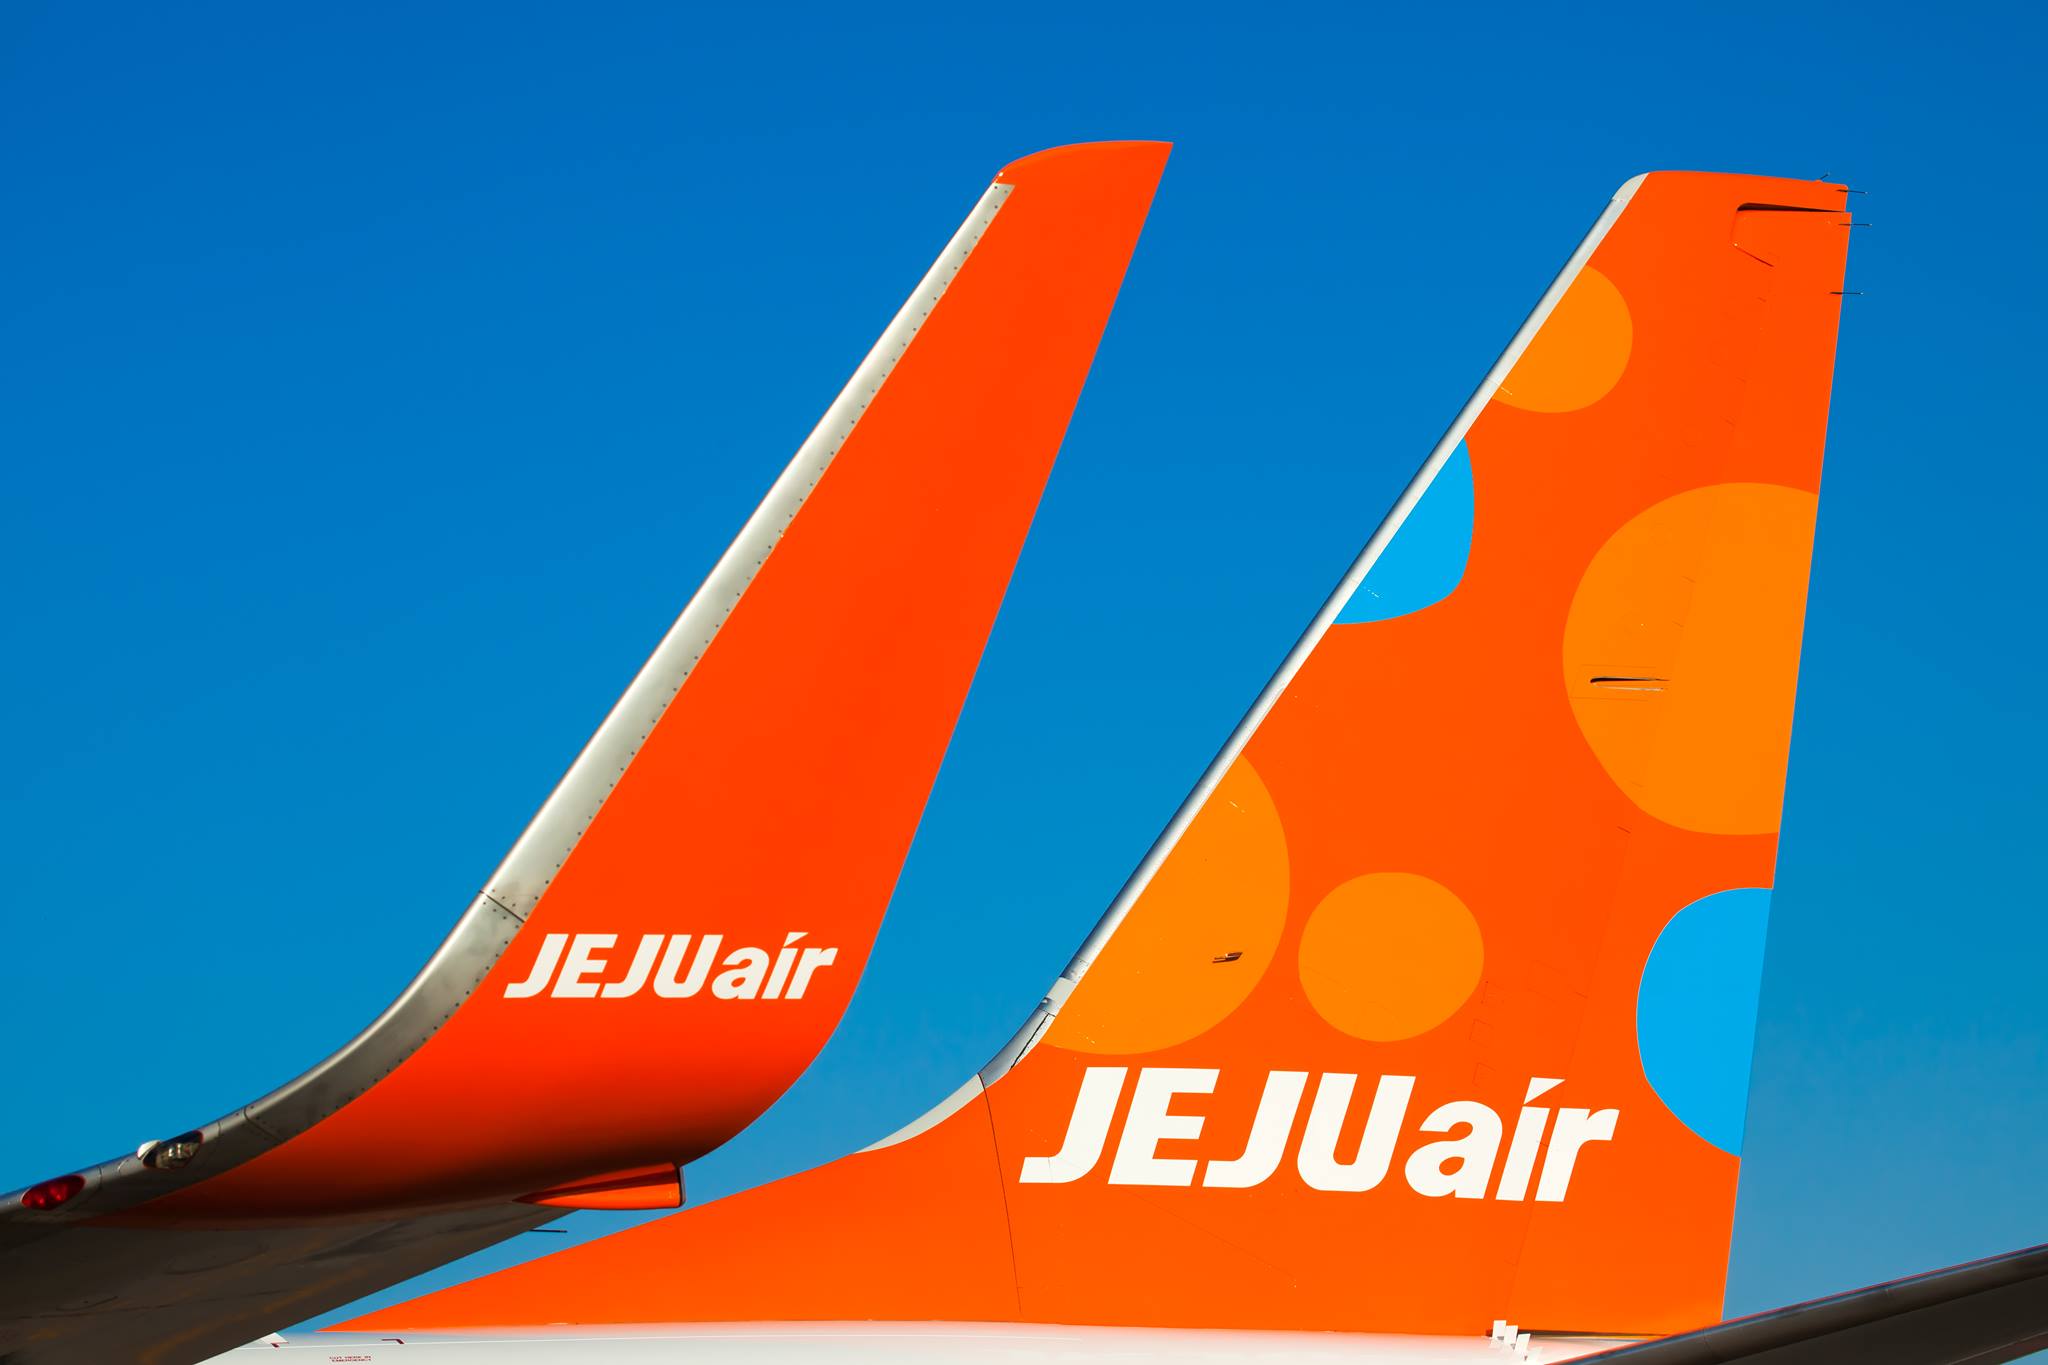 CAE 7000xr. Jeju Air. Jeju Air авиабилет. Jeju Air logo. Самолет нов слова